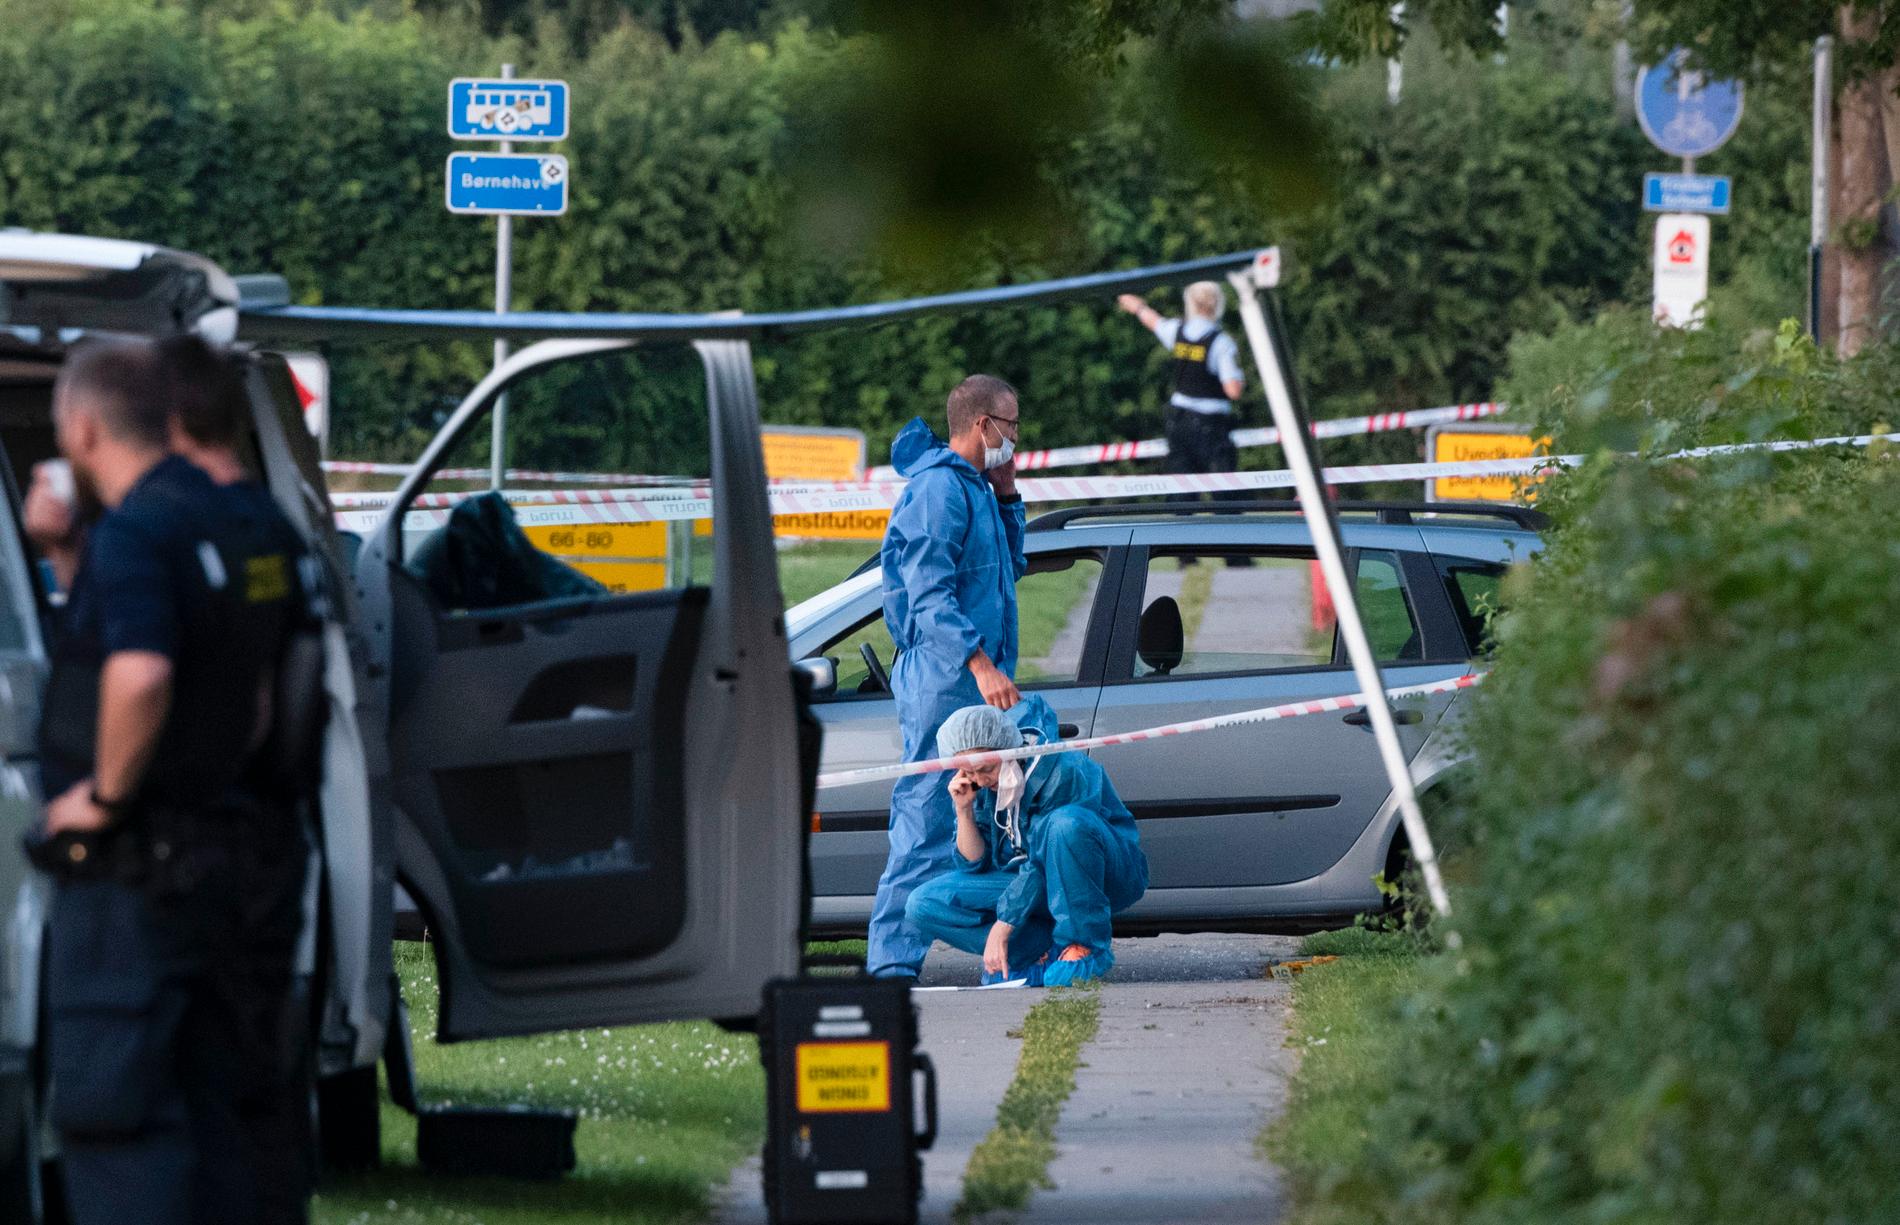 Polis och kriminaltekniker på plats efter att två människor skjutits ihjäl i en svenskregistrerad bil i Köpenhamnsförorten Herlev. Arkivbild.